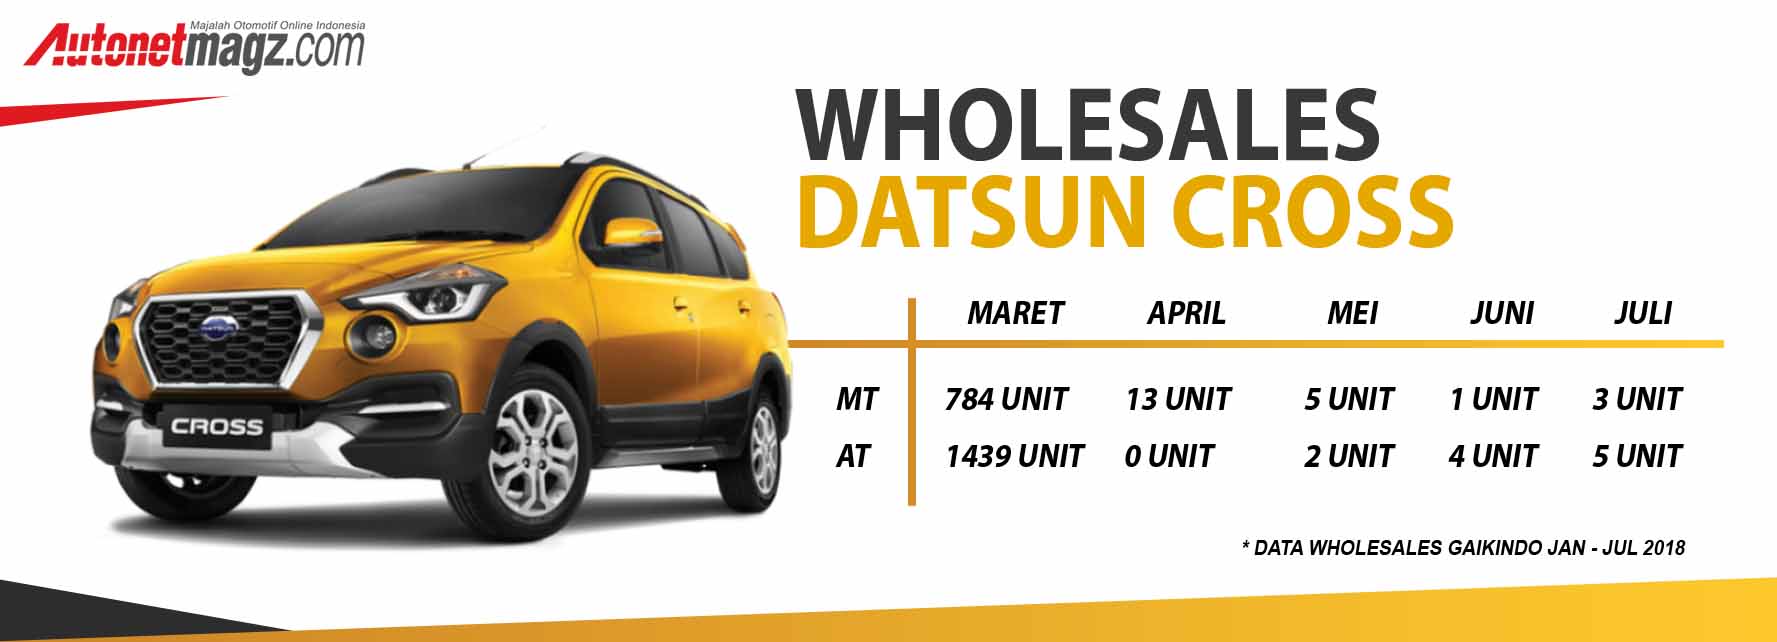 Berita, Data Wholesales Datsun Cross: Pasca 6 Bulan, Bagaimana Nasib Datsun Cross Sekarang?